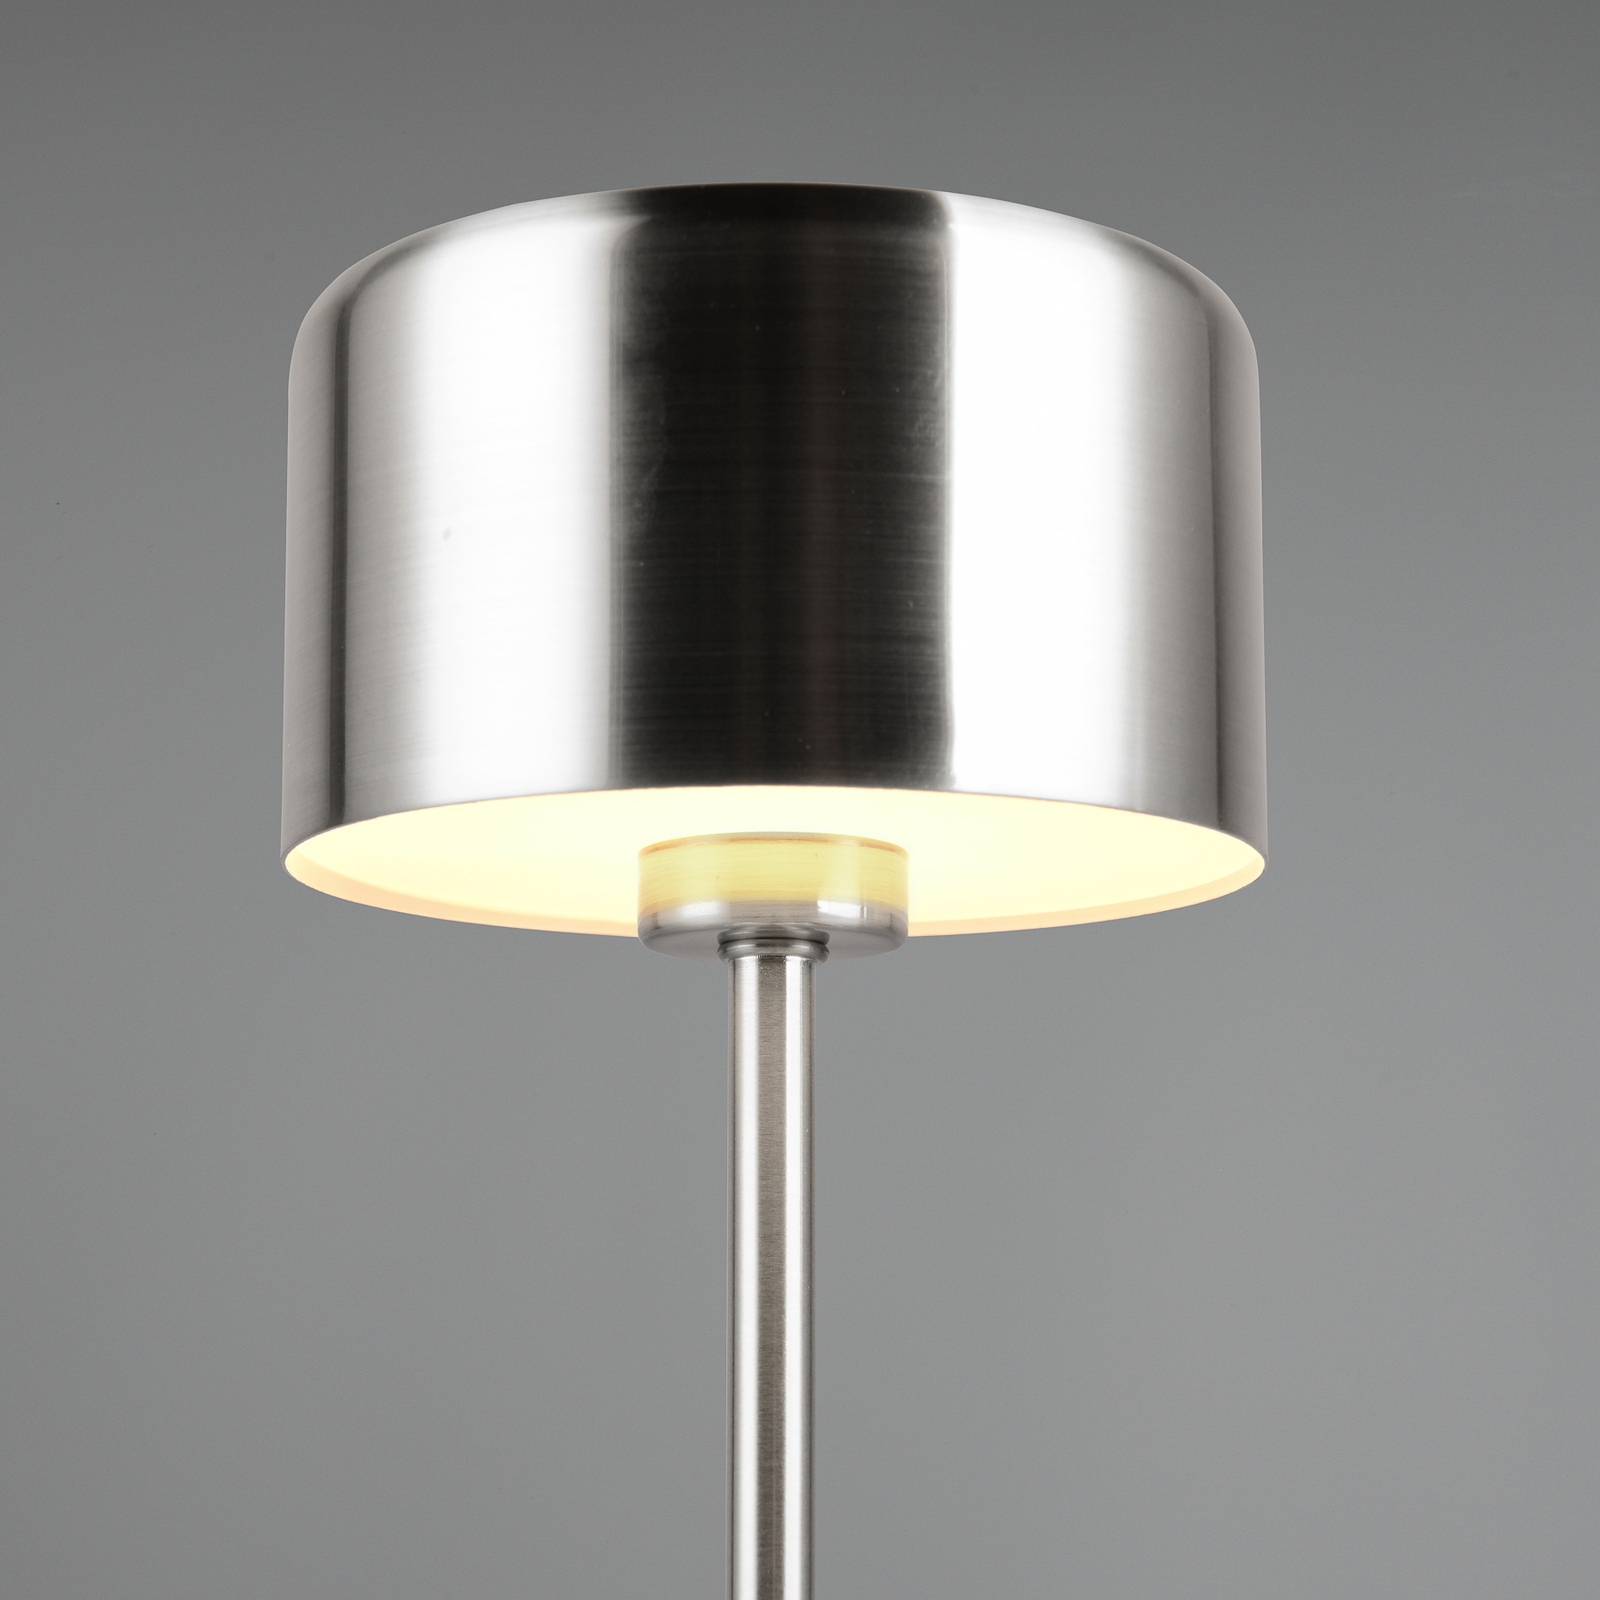 Jeff LED oppladbar bordlampe, nikkelfarget, høyde 30 cm, metall